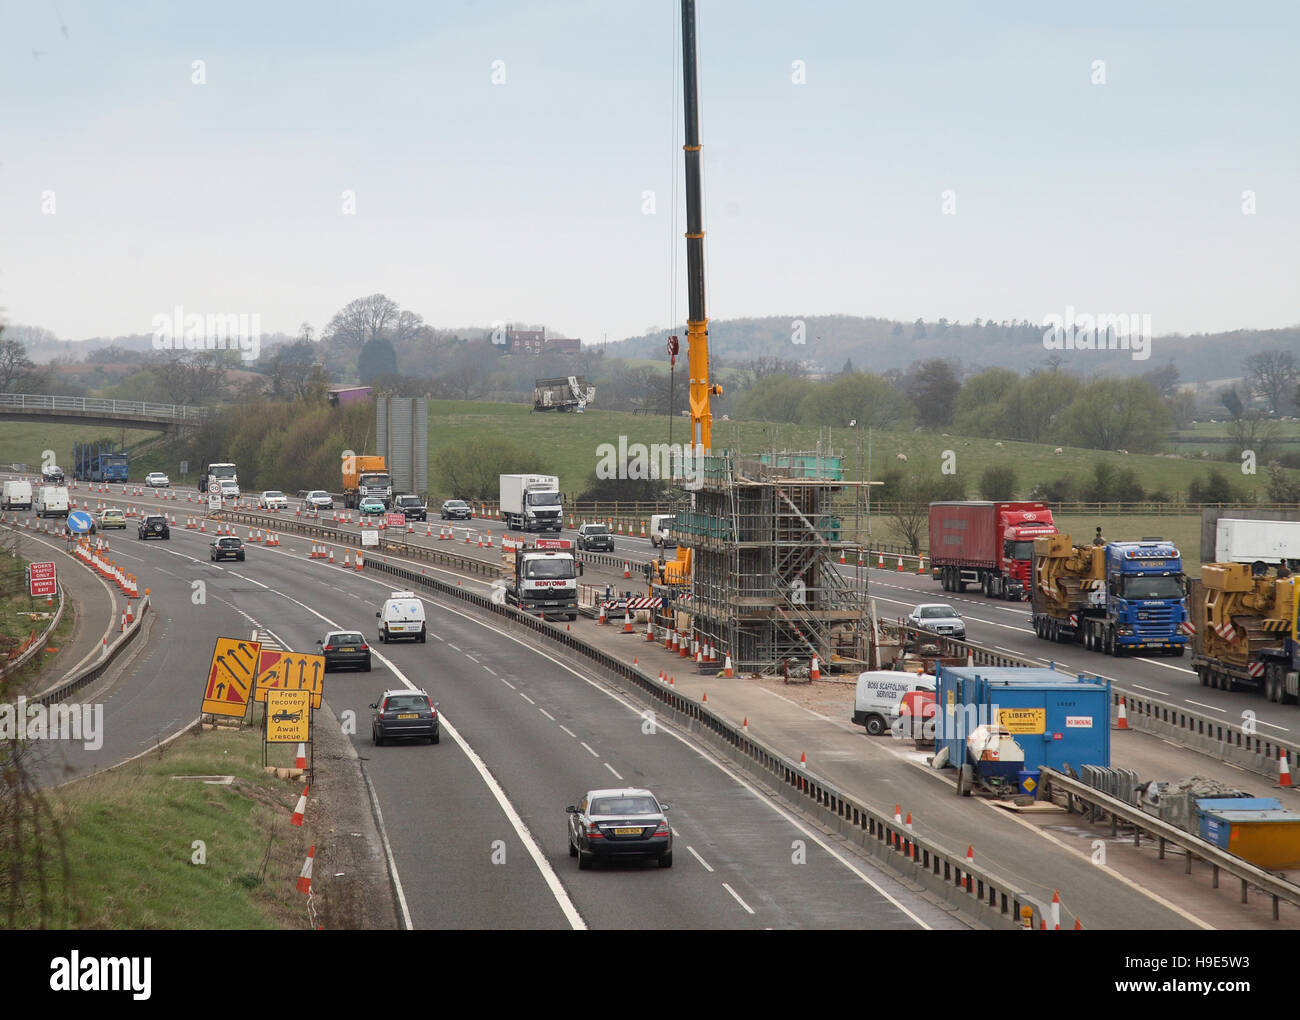 Bau einer neuen Brücke für die A46 über die Autobahn M40, Oxfordshire, Großbritannien. Schalung für Brückenpfeilern und Kran im zentralen Reservat. Stockfoto